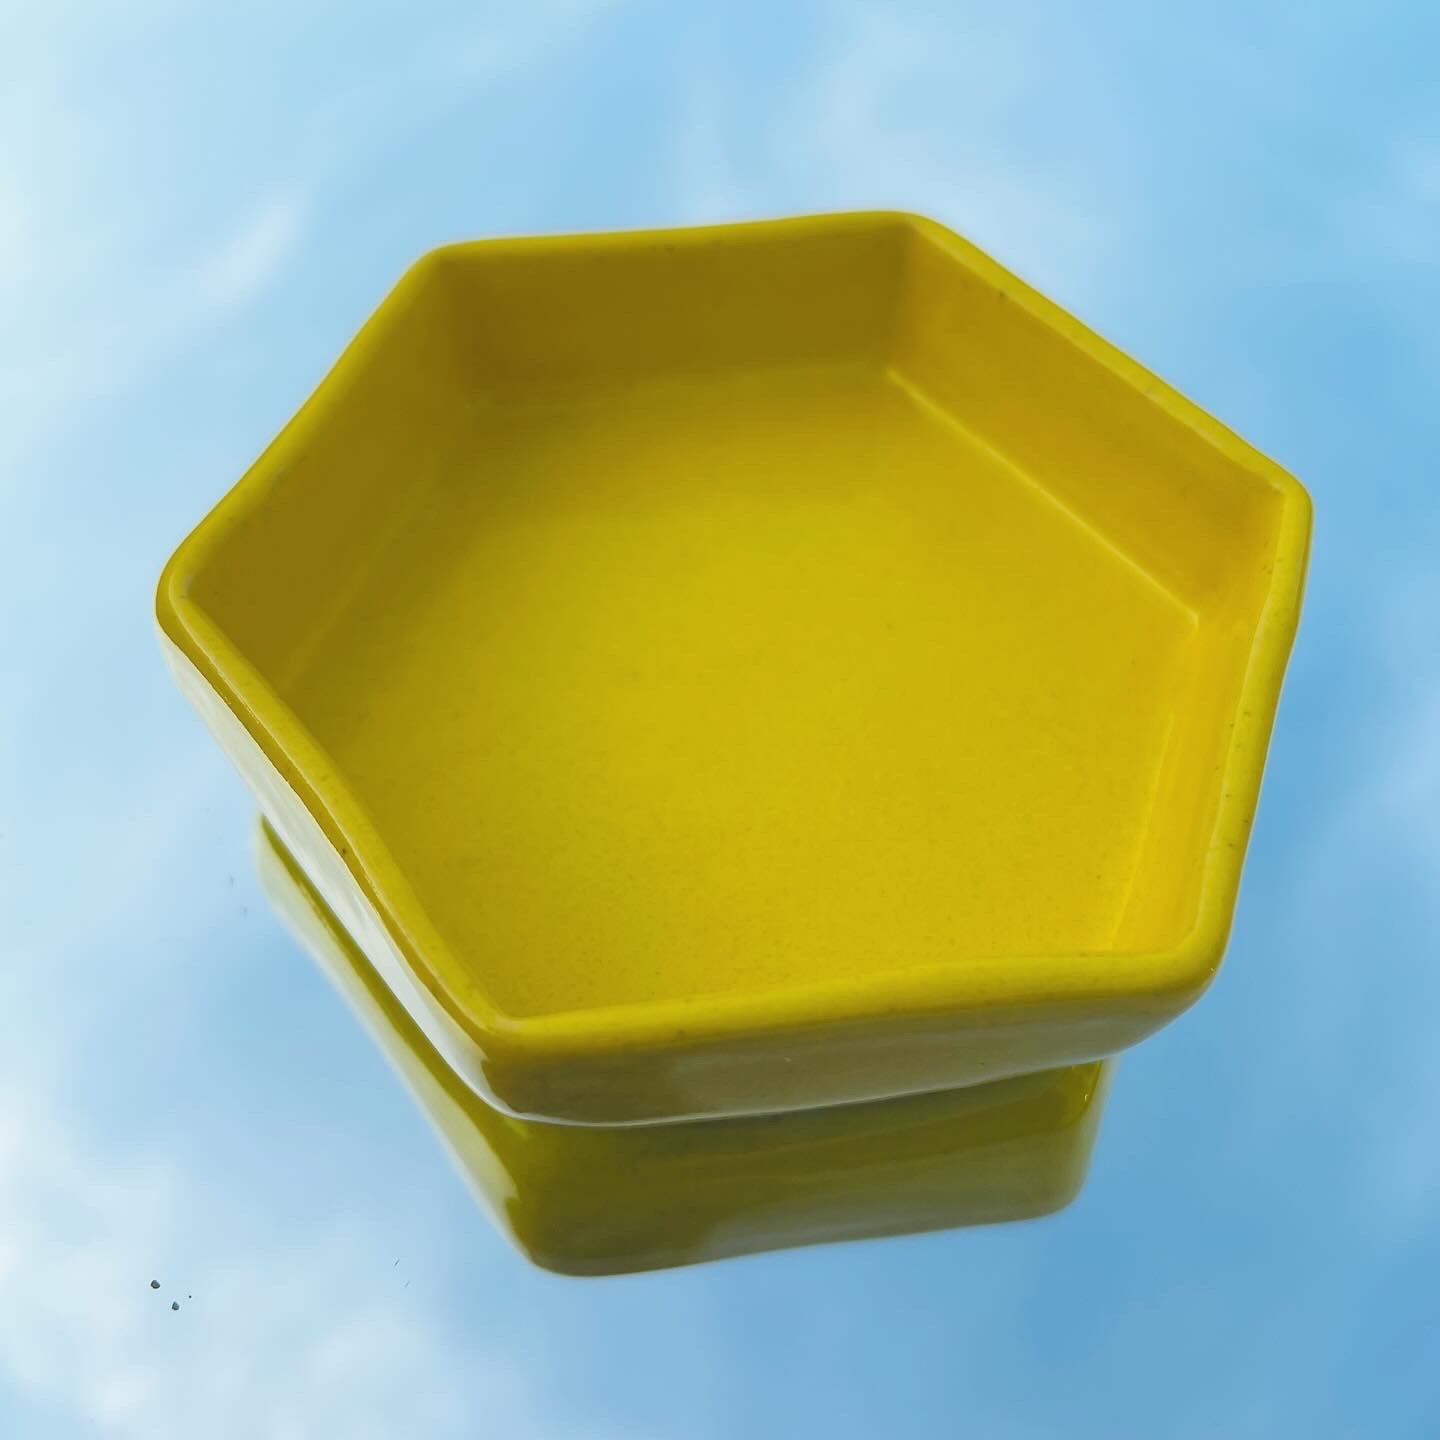 Handmade Pottery Dish - Sunshine Yellow